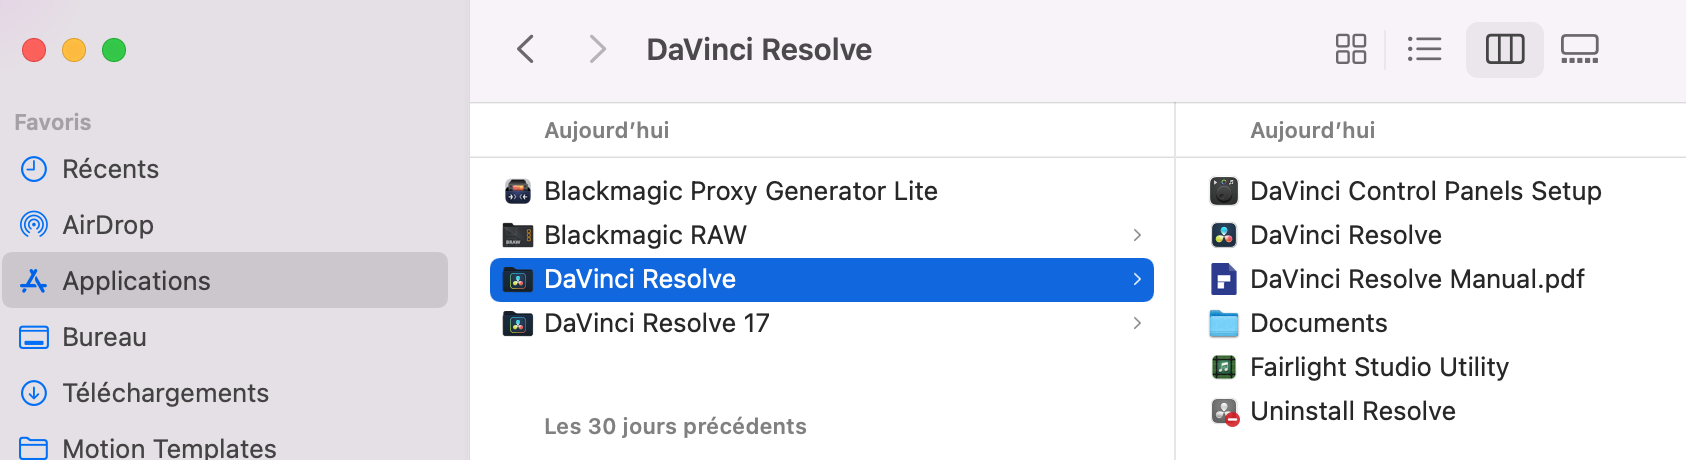 Installer deux versions de DaVinci Resolve sur son ordinateur